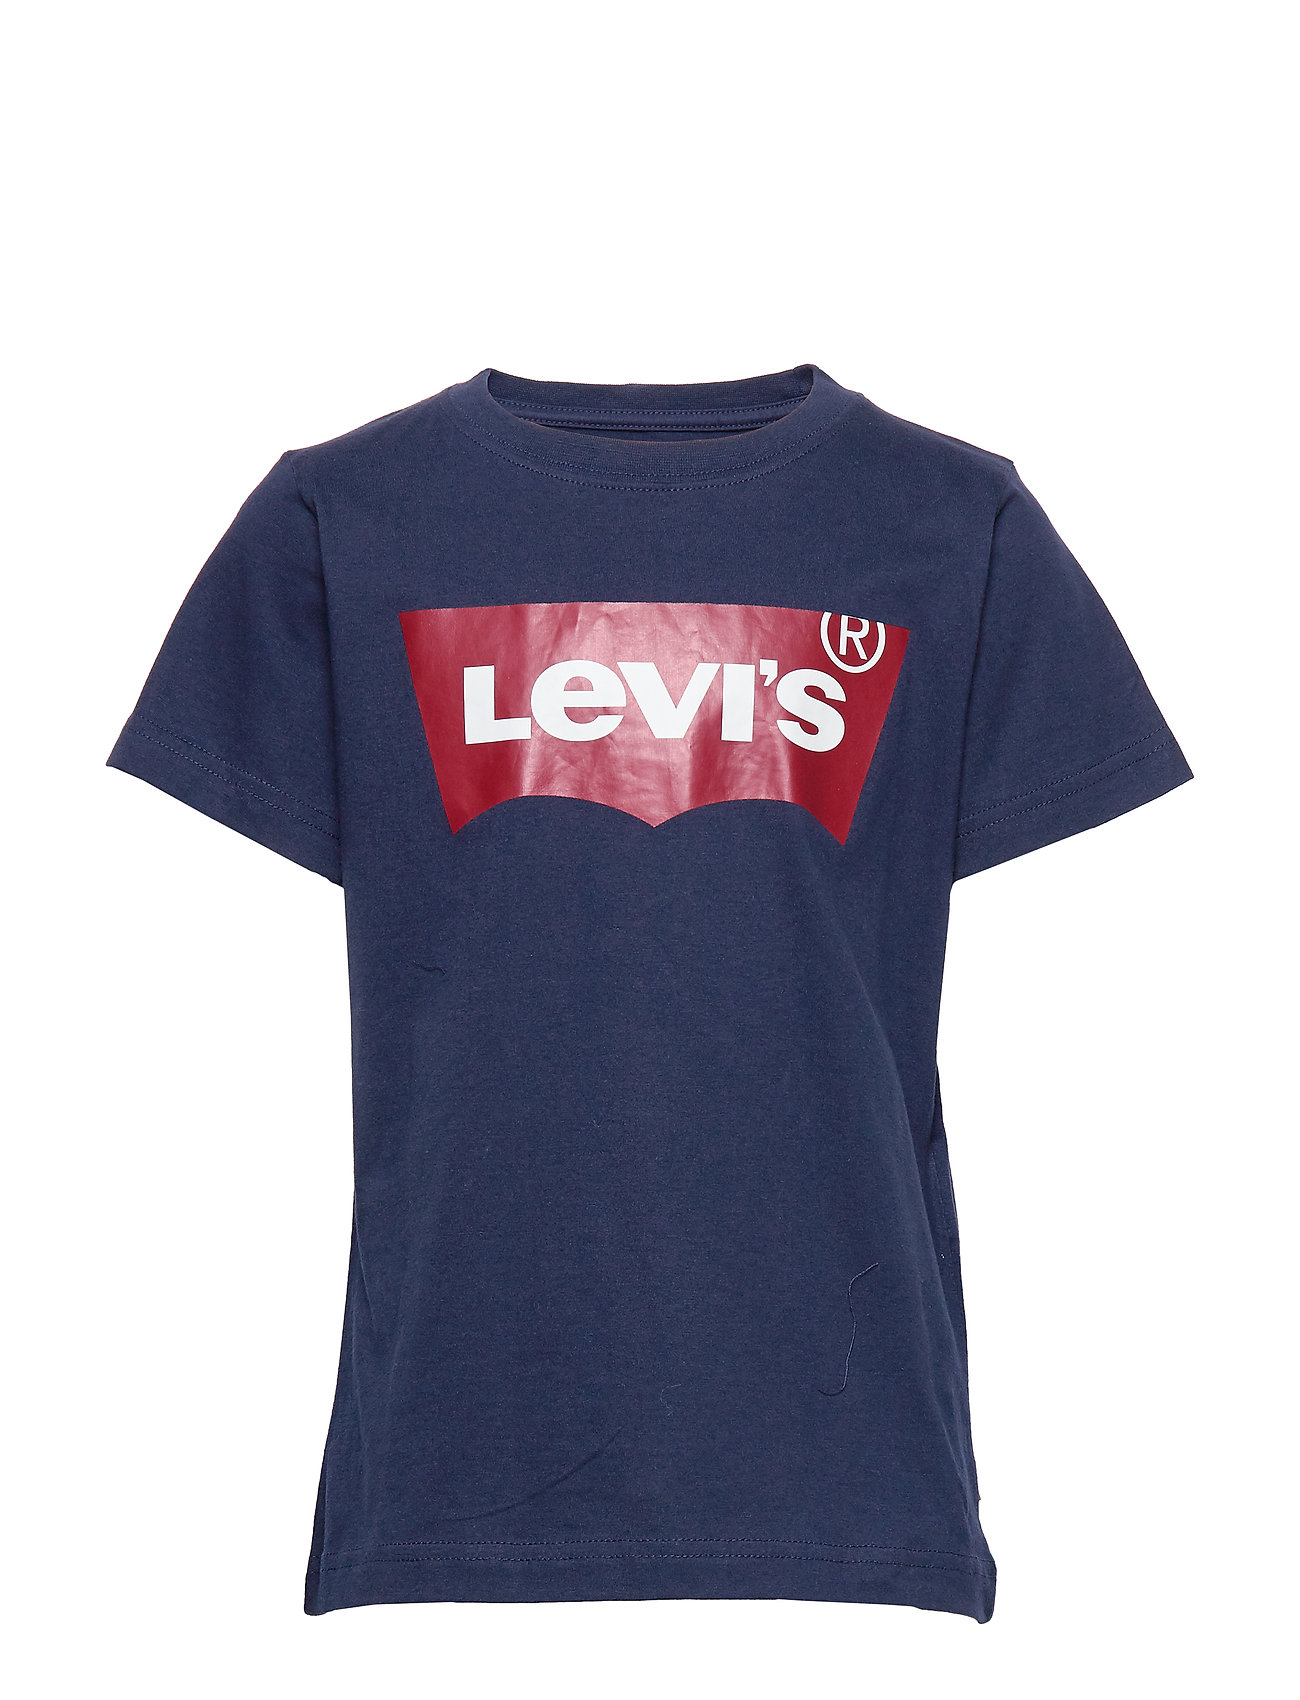 levis t shirt outlet